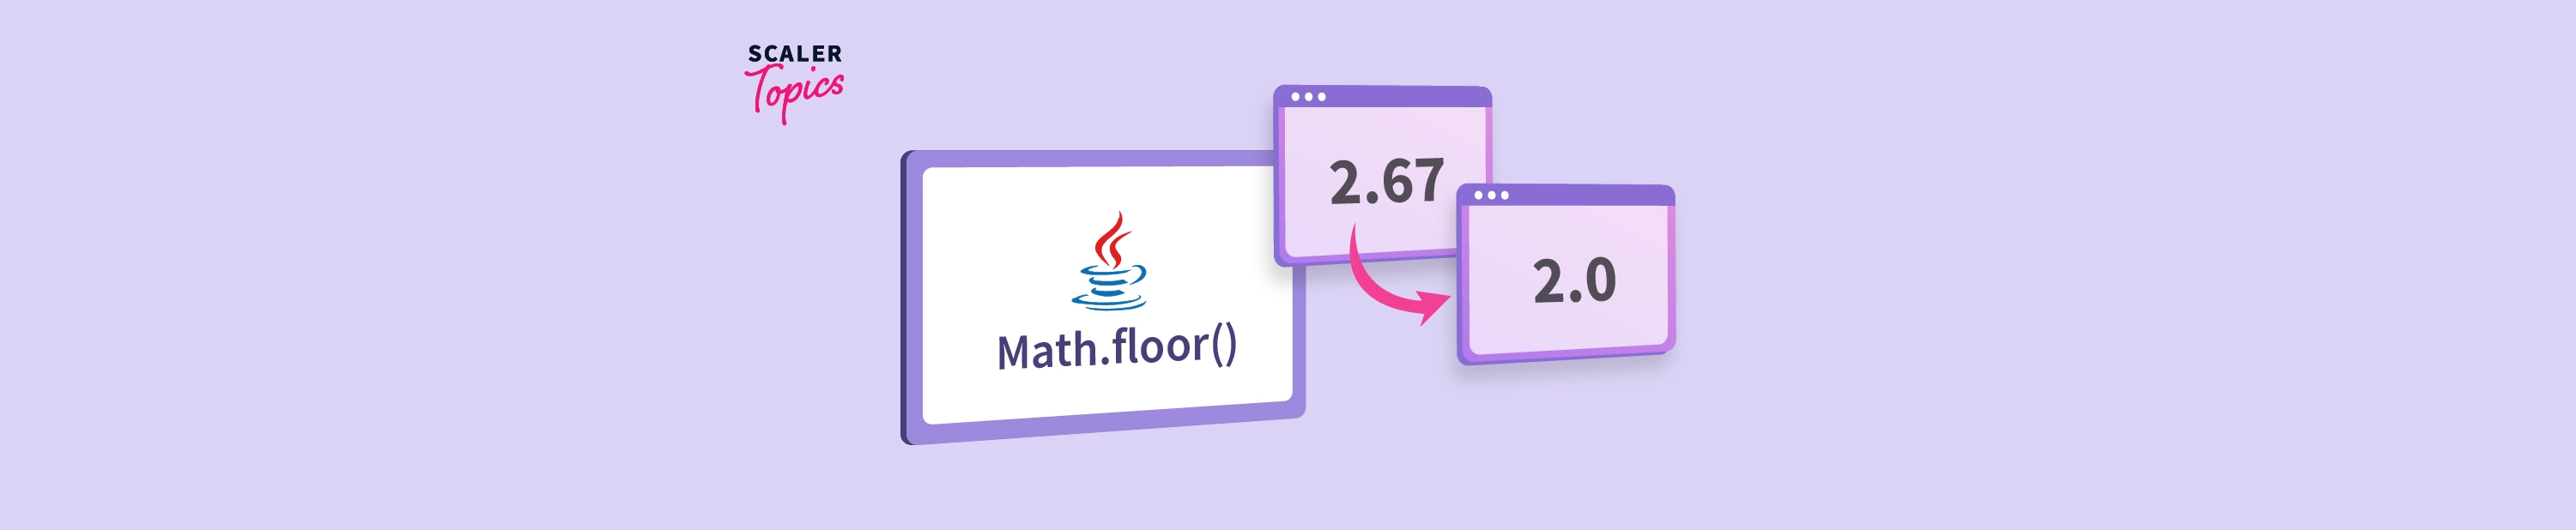 Math Floor Java Function In Scaler Topics